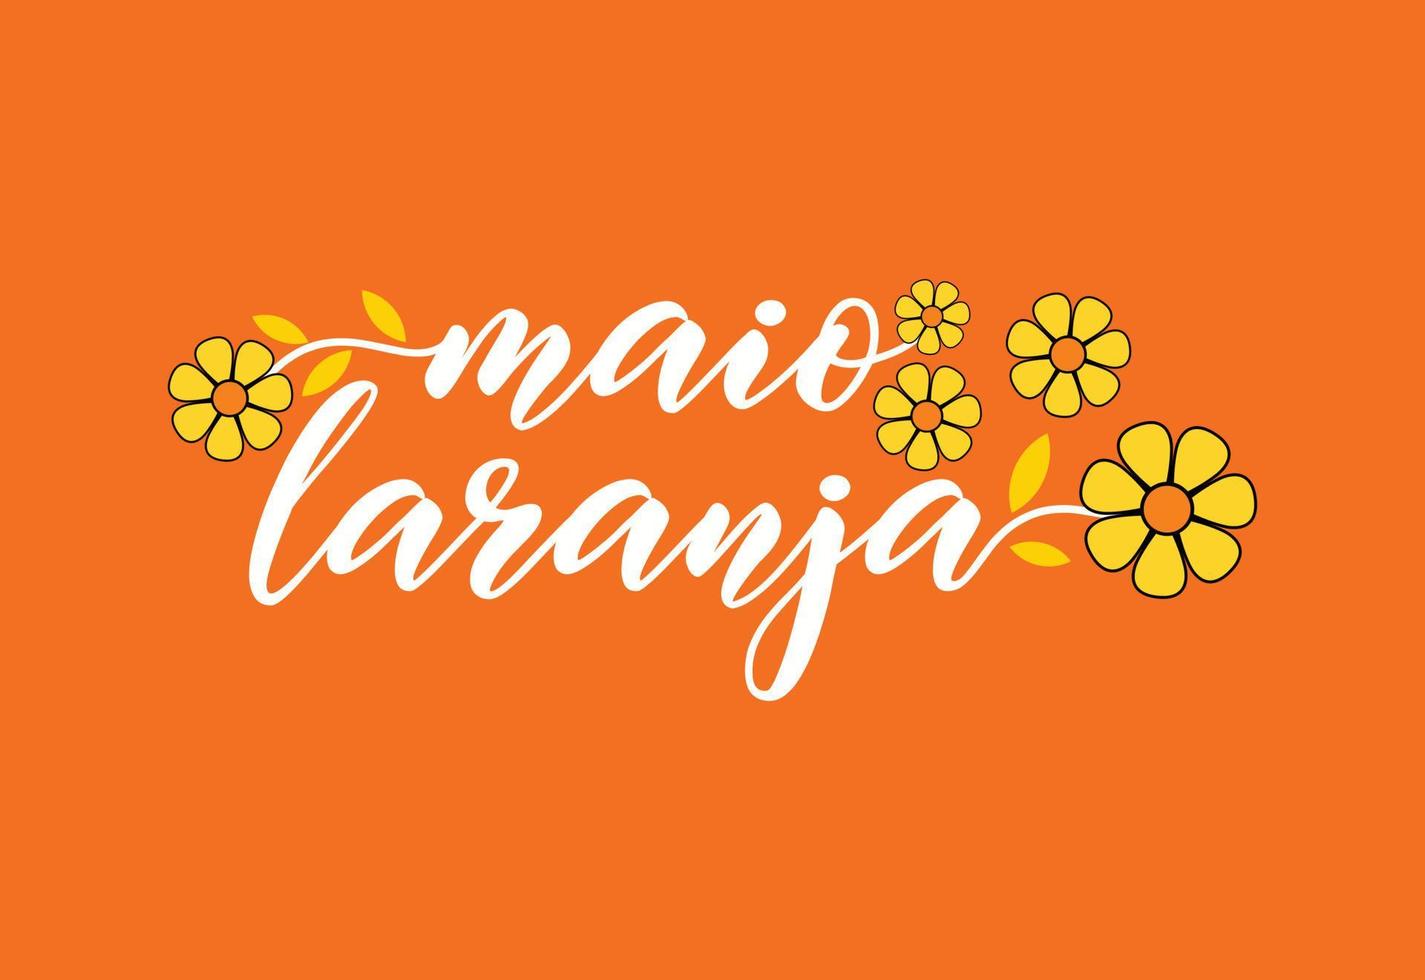 Maio Laranja. 18. mai ist nationaler tag gegen missbrauch und ausbeutung von kindern in brasilien vektor